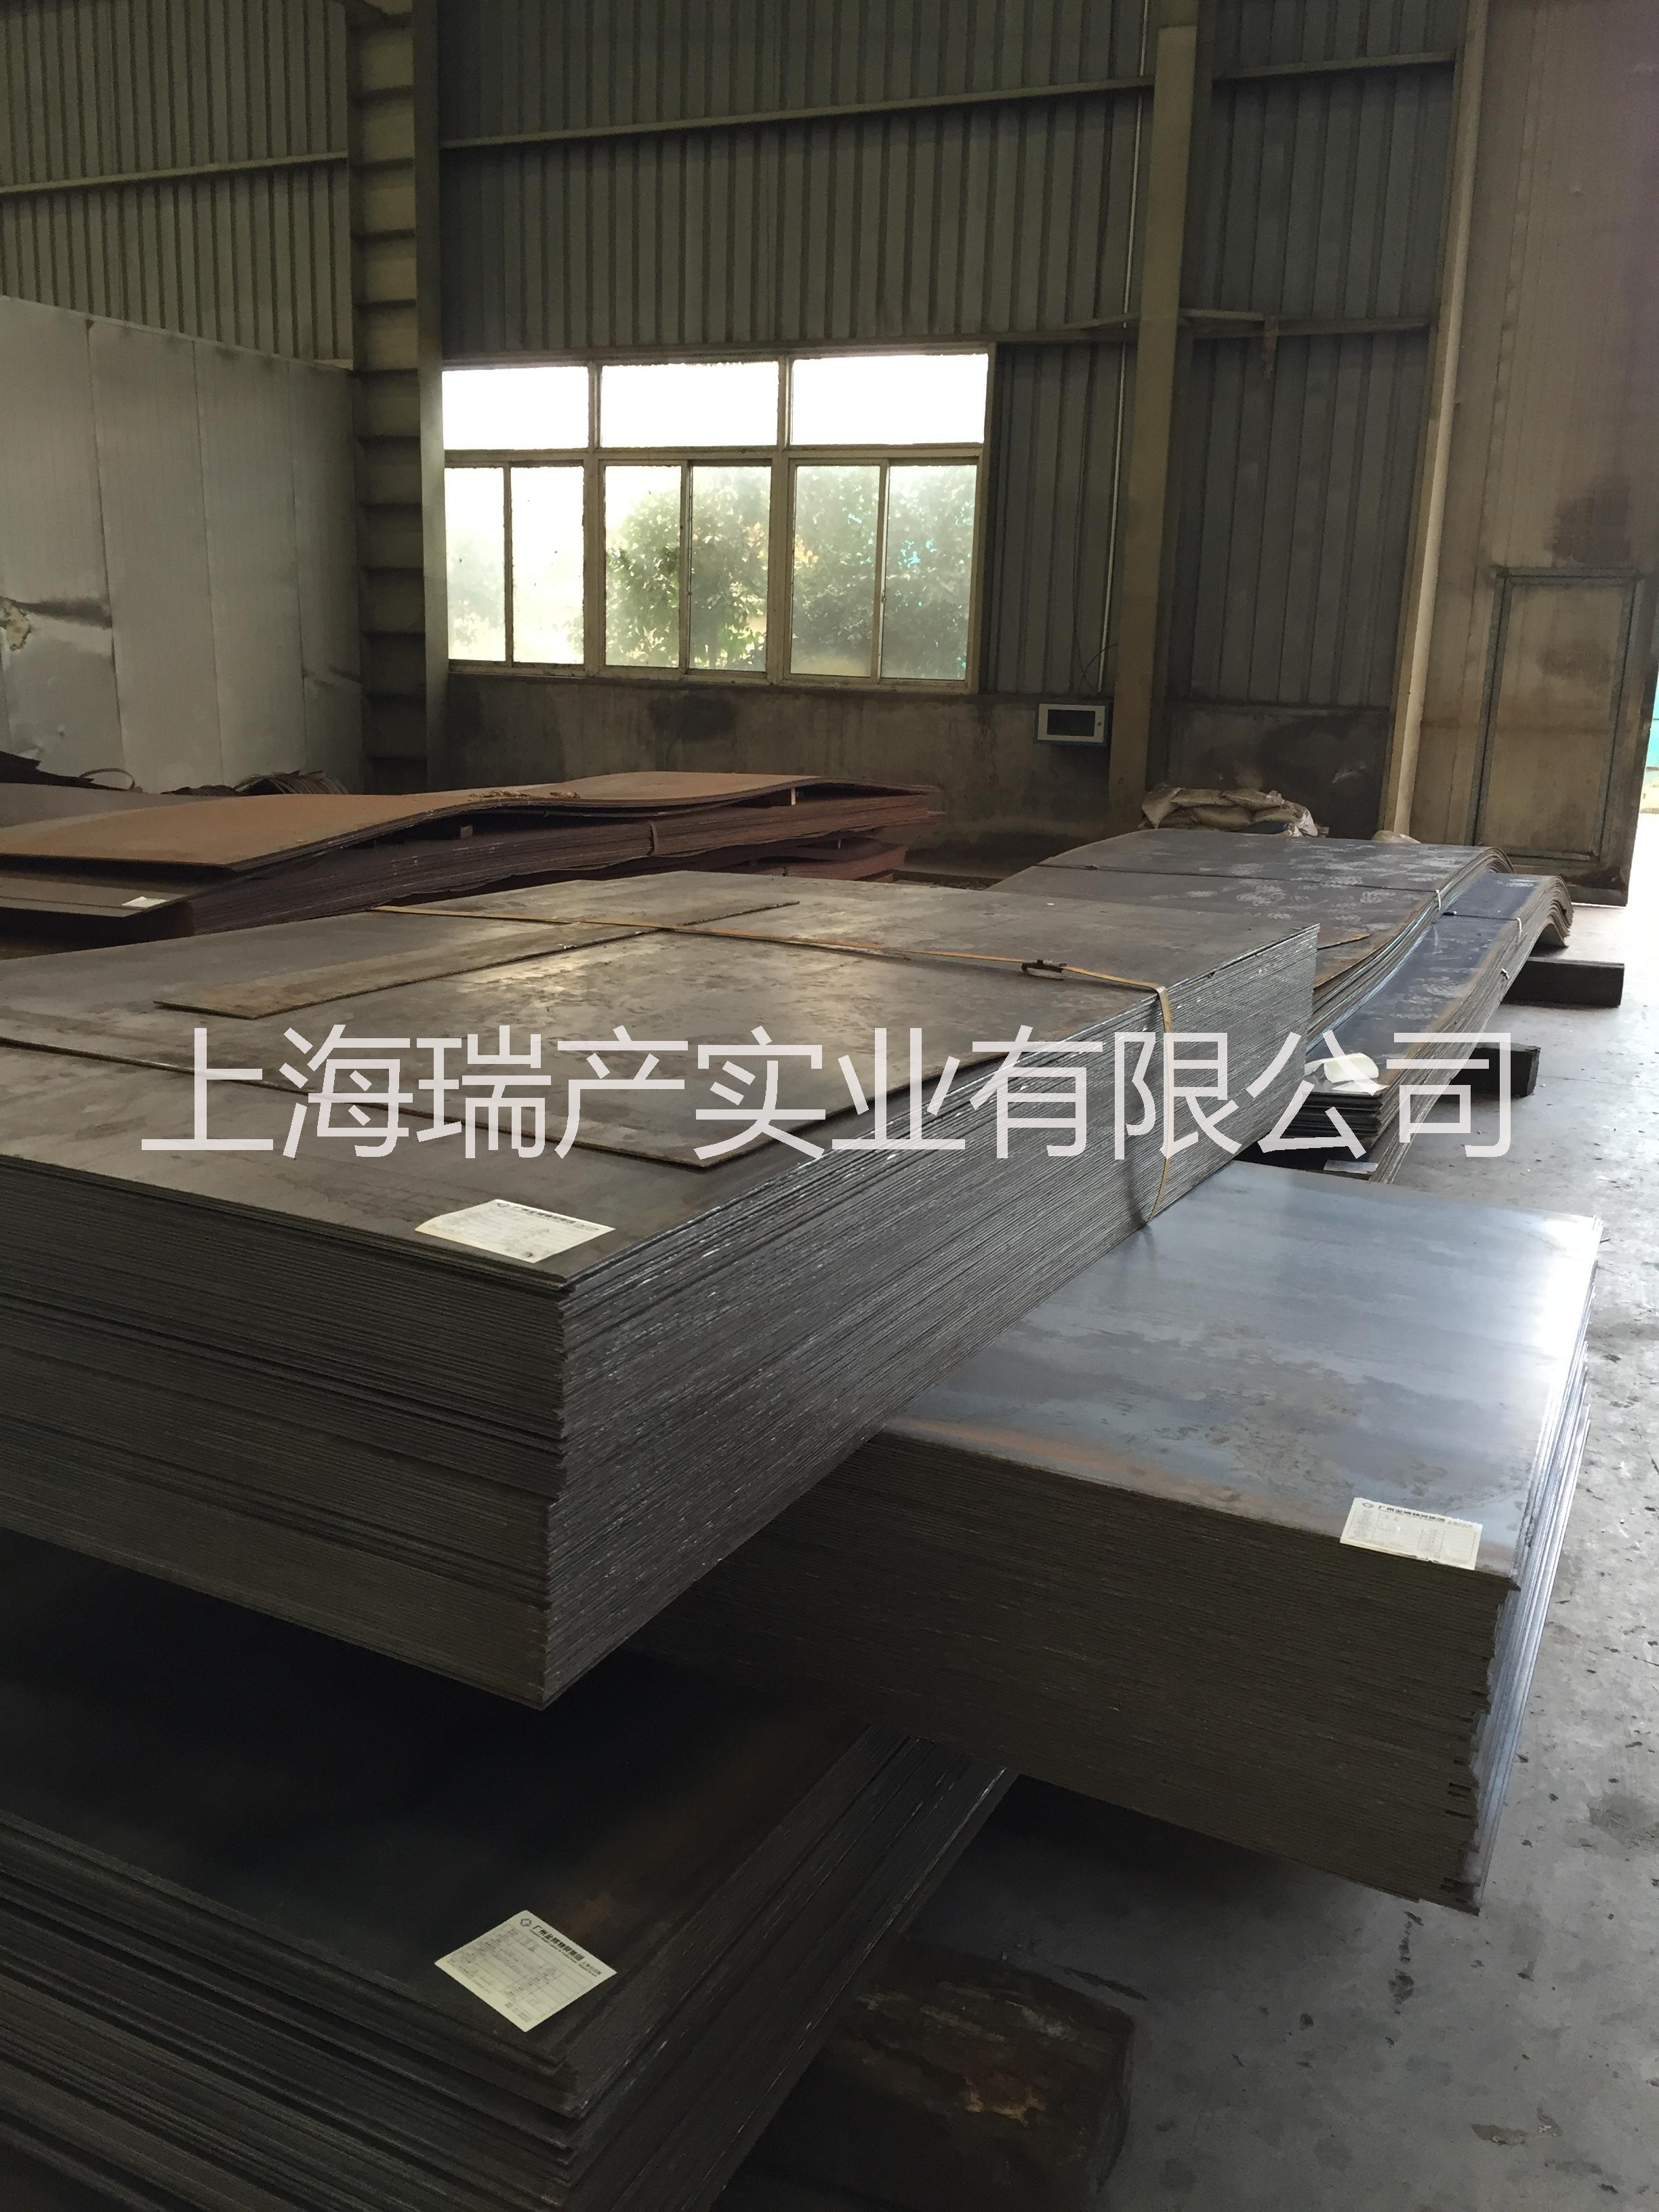 上海宝钢耐候钢板价格 耐候钢价格 耐候板